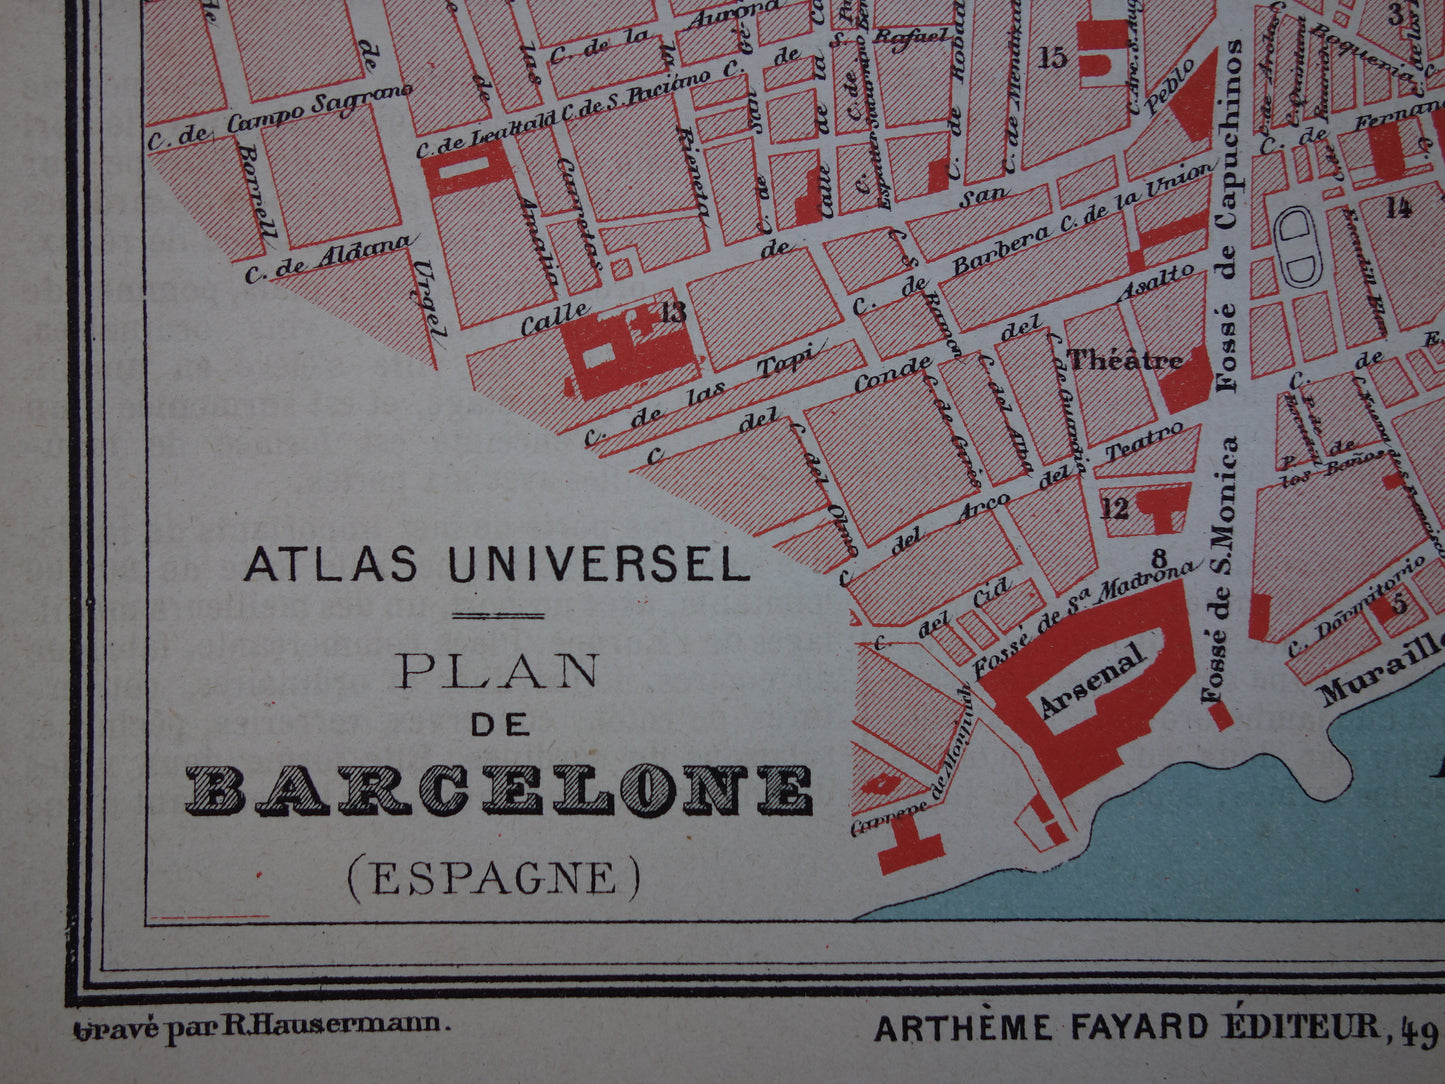 BARCELONA oude kaart van Barcelona Spanje uit 1877 originele antieke plattegrond vintage kaarten